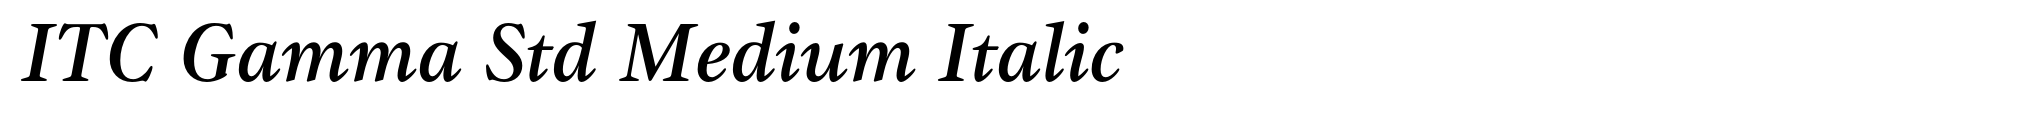 ITC Gamma Std Medium Italic image